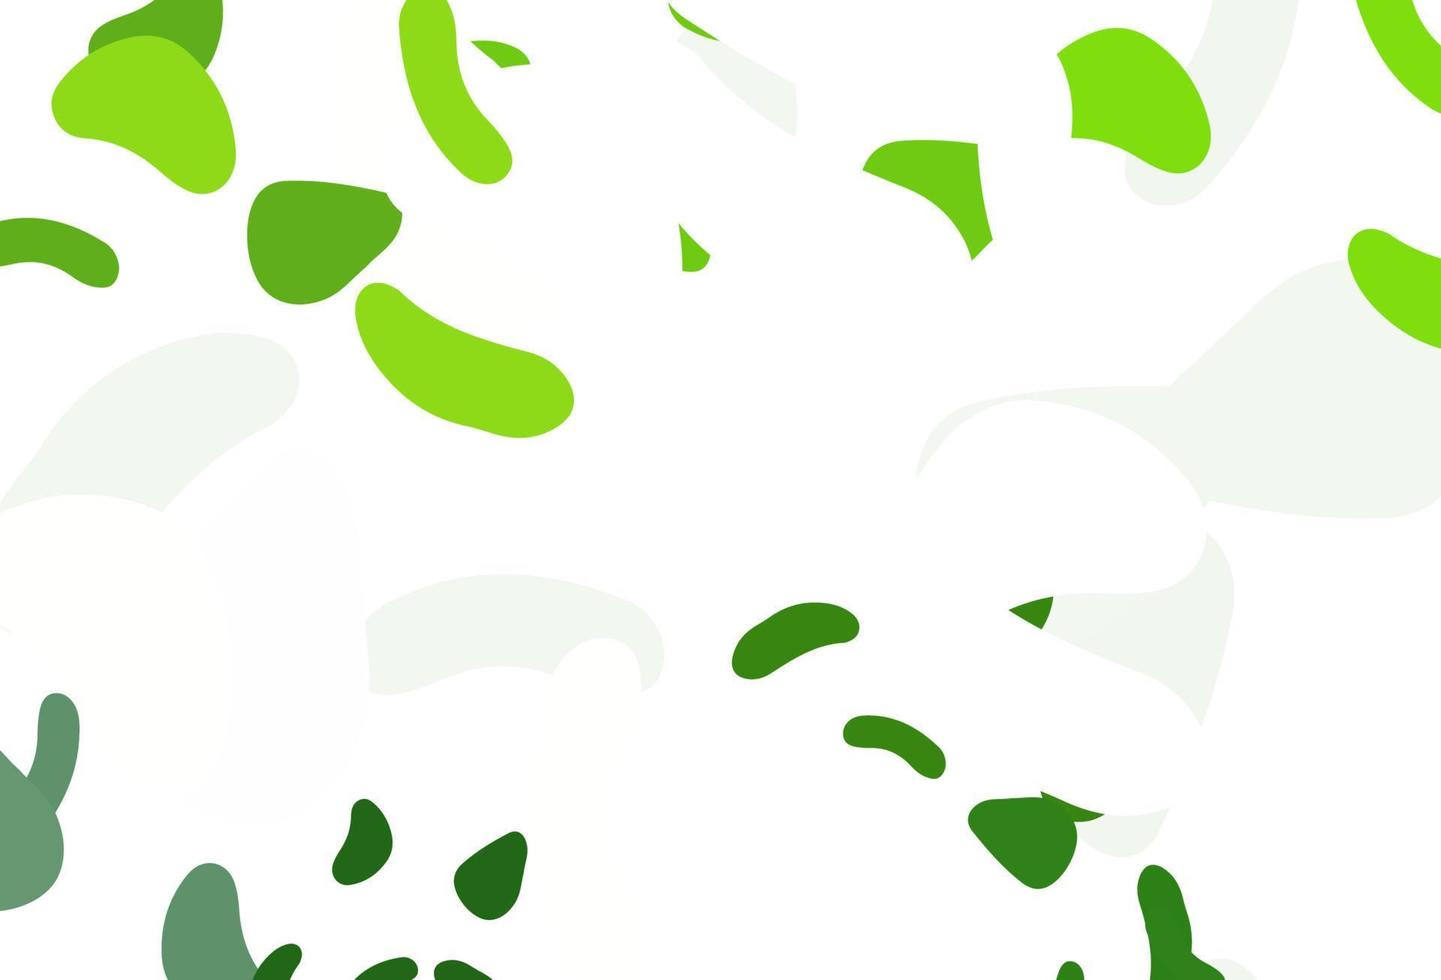 texture vecteur vert clair avec des formes aléatoires.